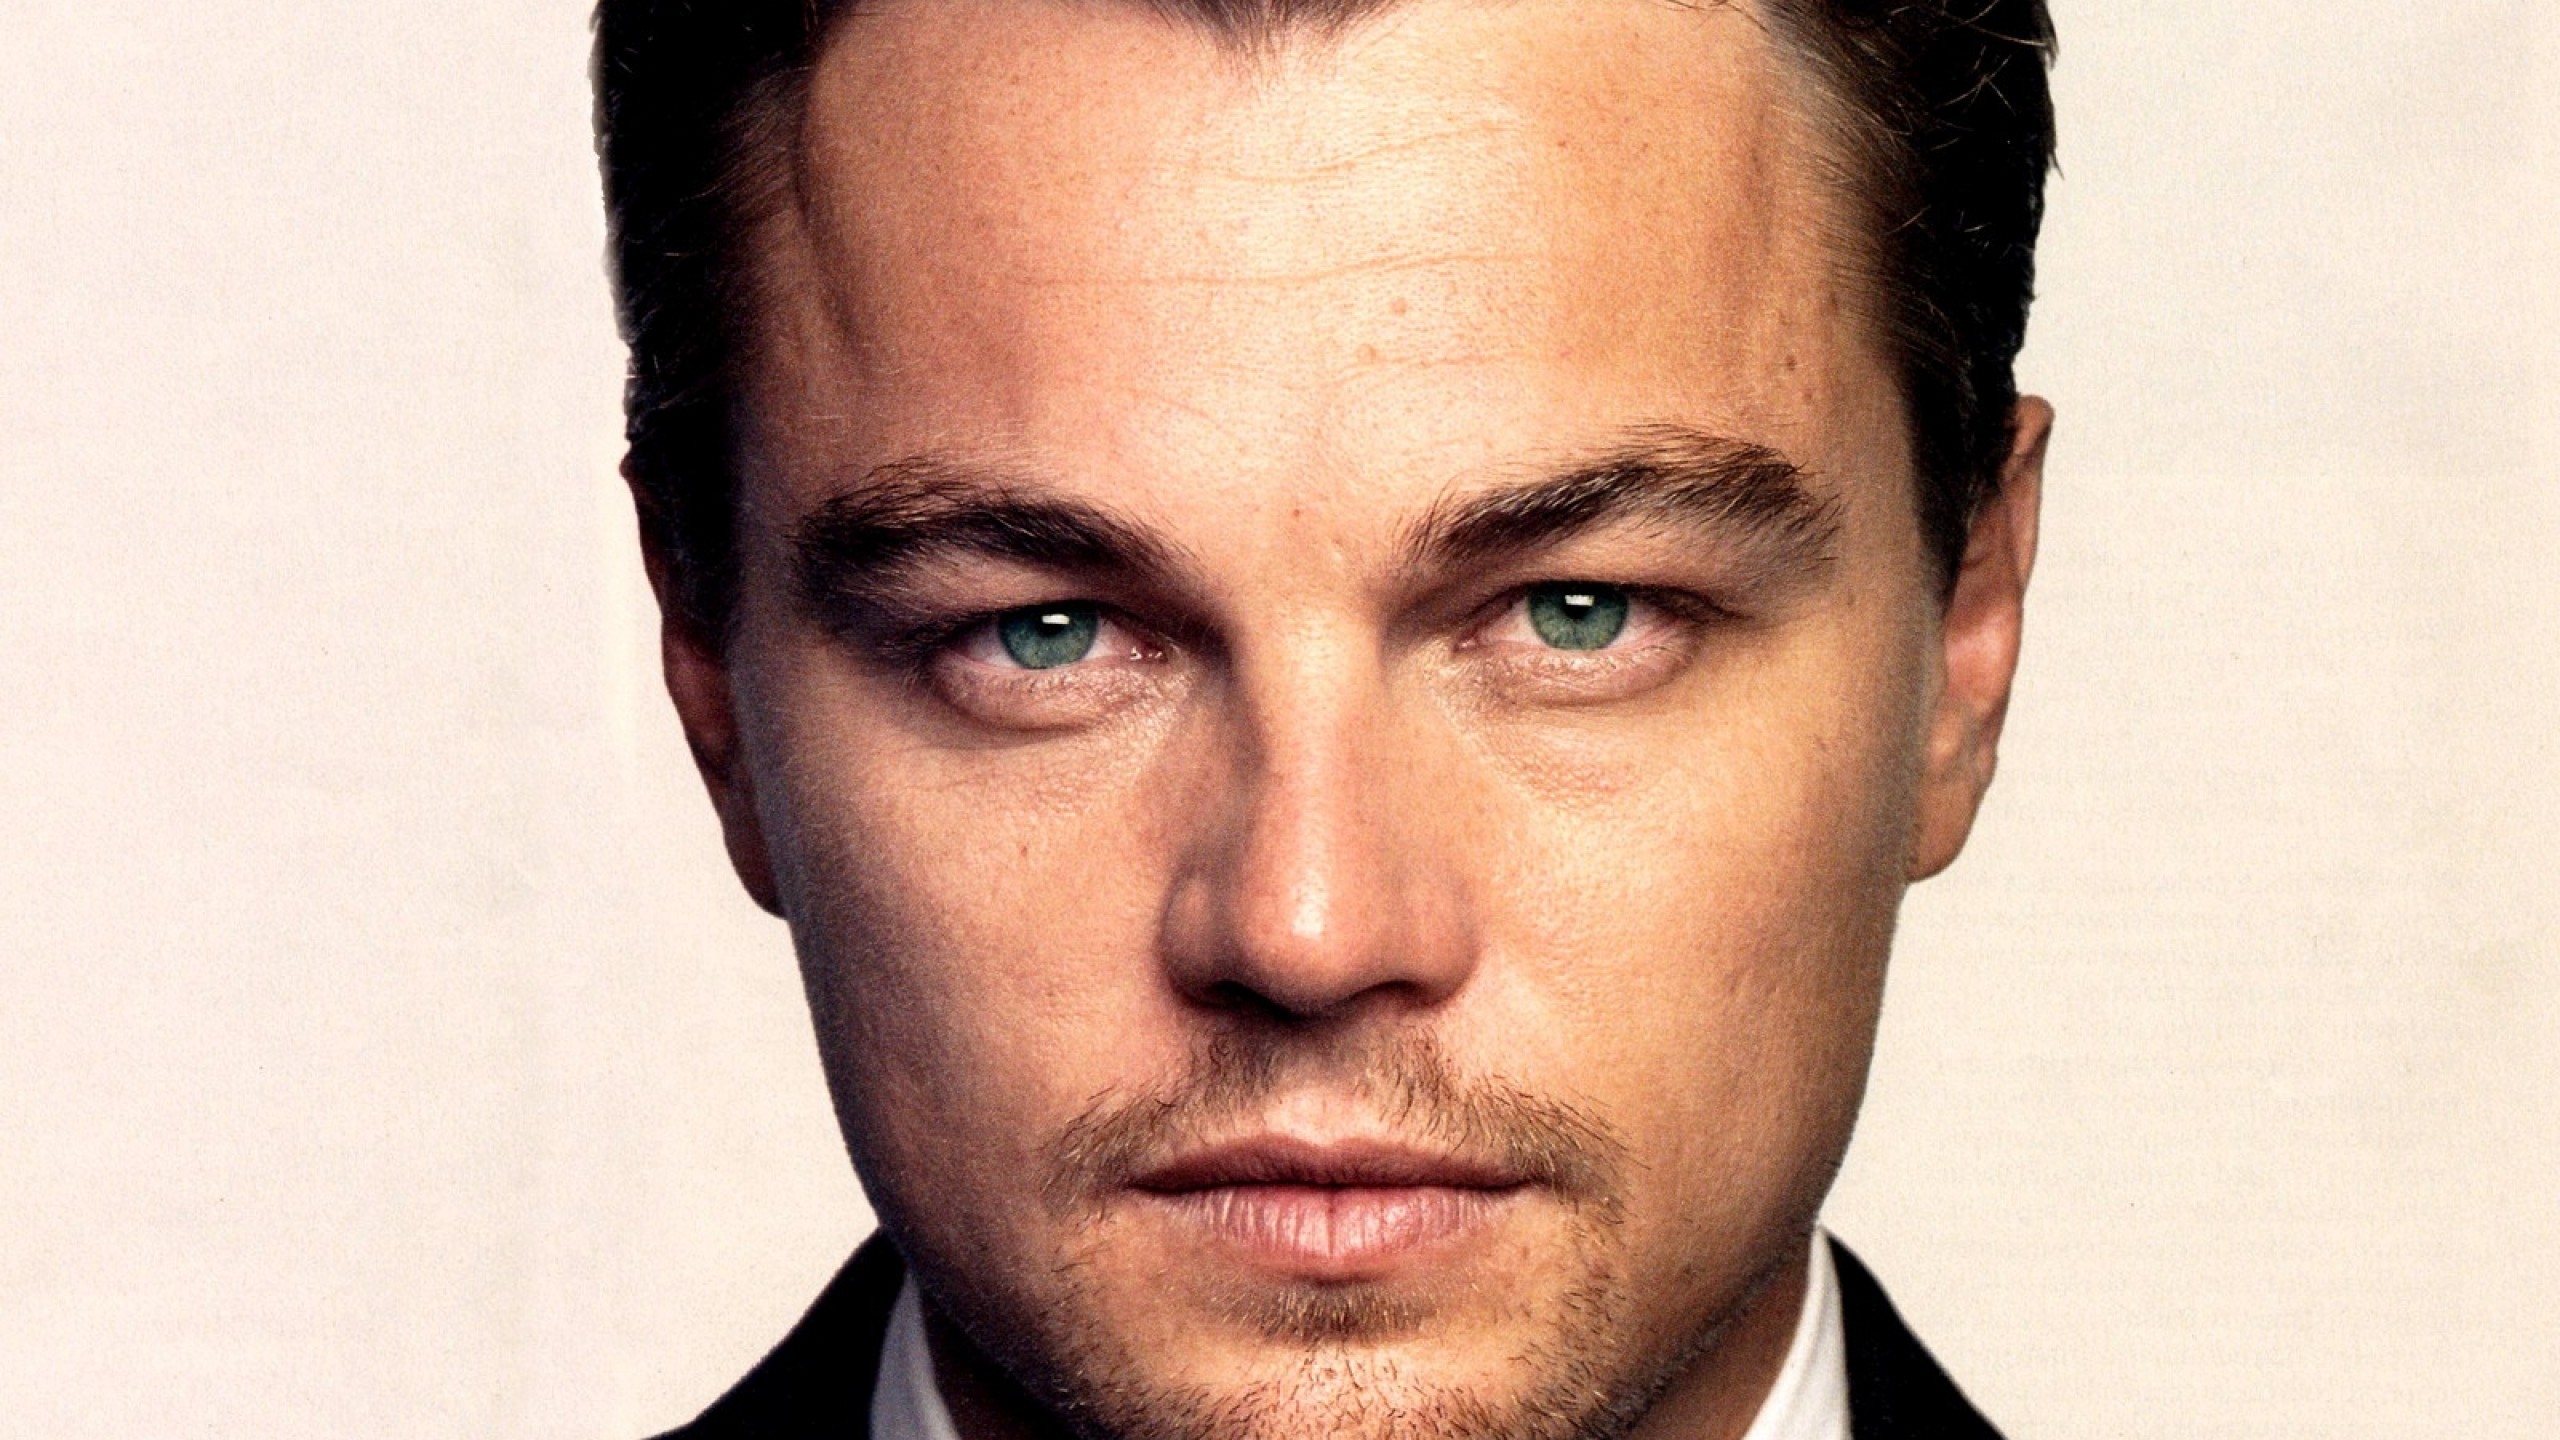 2560x1440 Resolution Leonardo DiCaprio Close up wallpaper 1440P ...